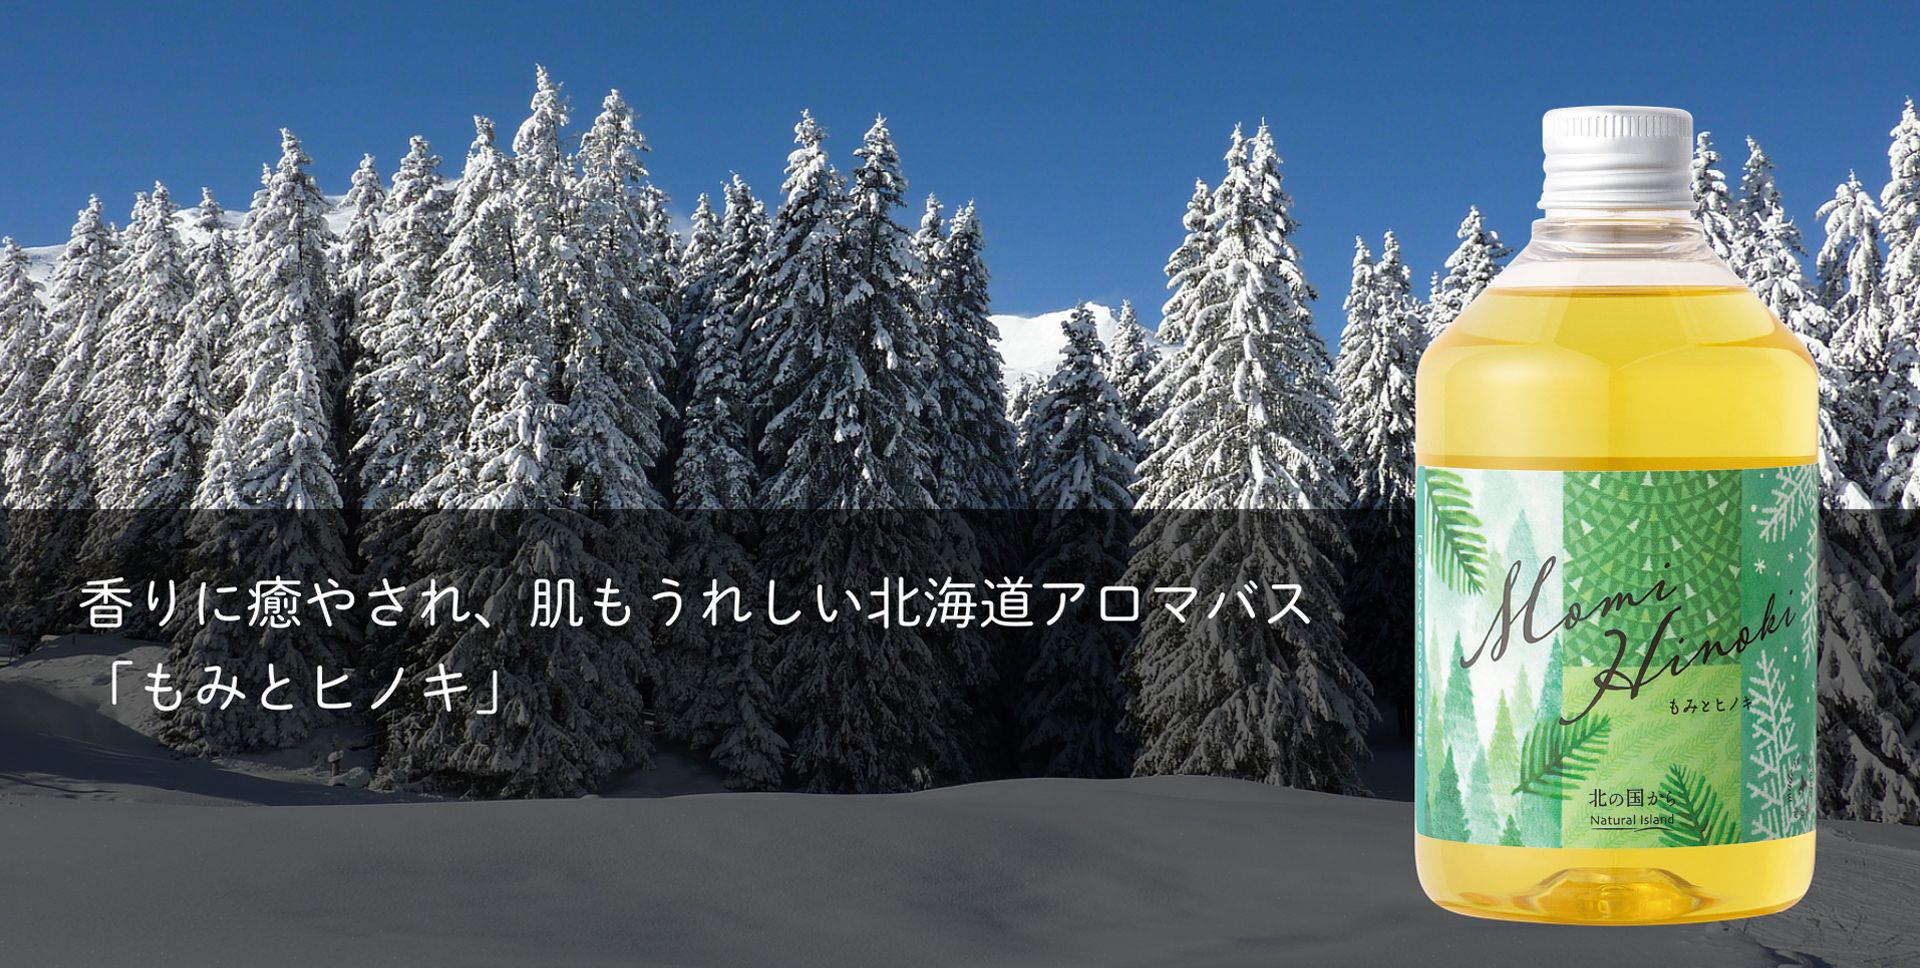 香りに癒され、肌もうれしい北海道アロマバス「もみとヒノキ」